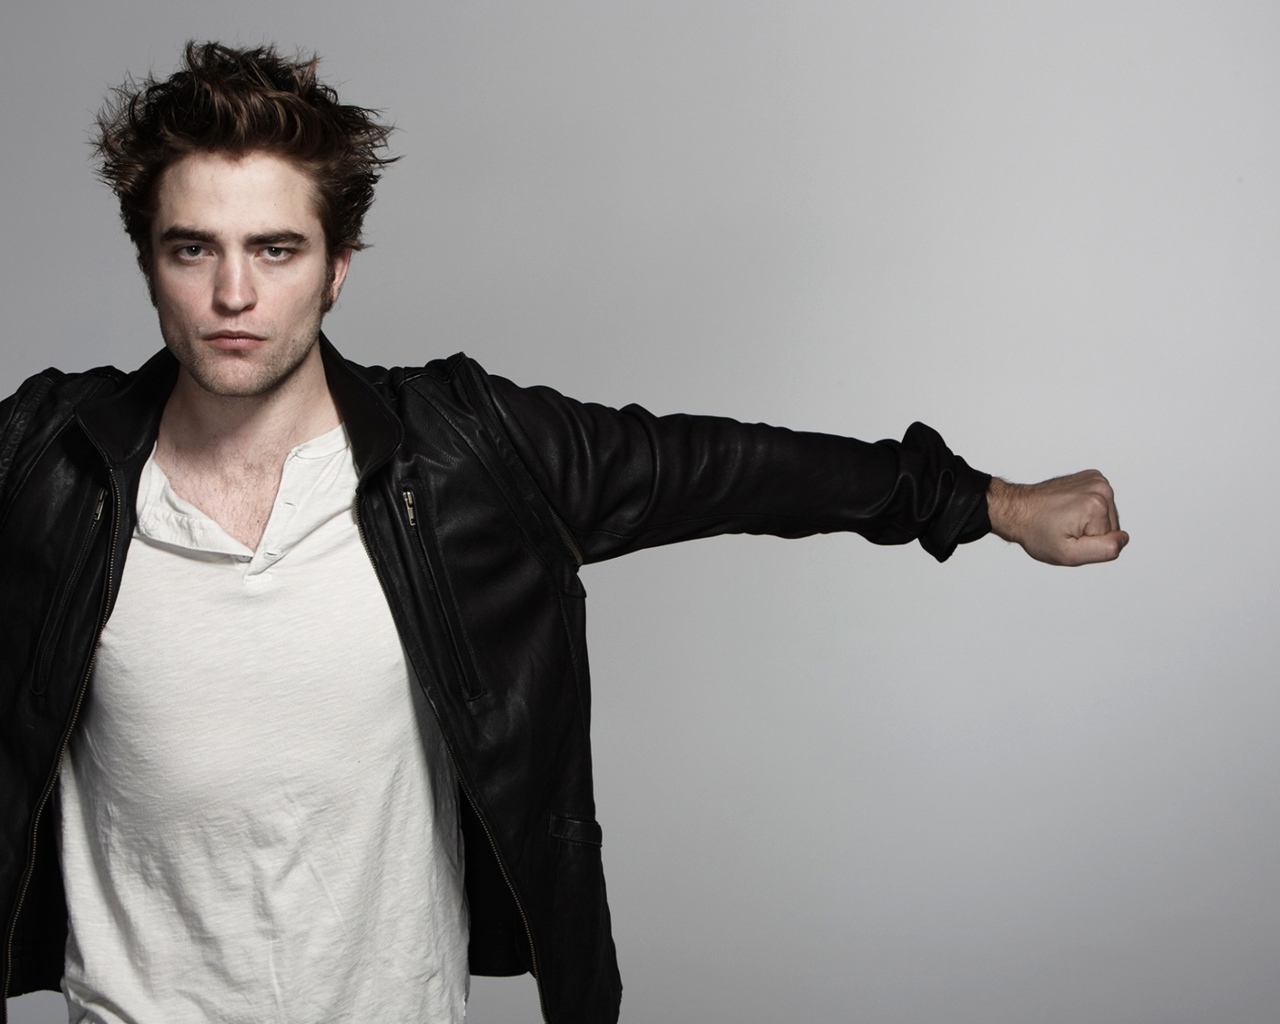 Popular young actor Robert Pattinson